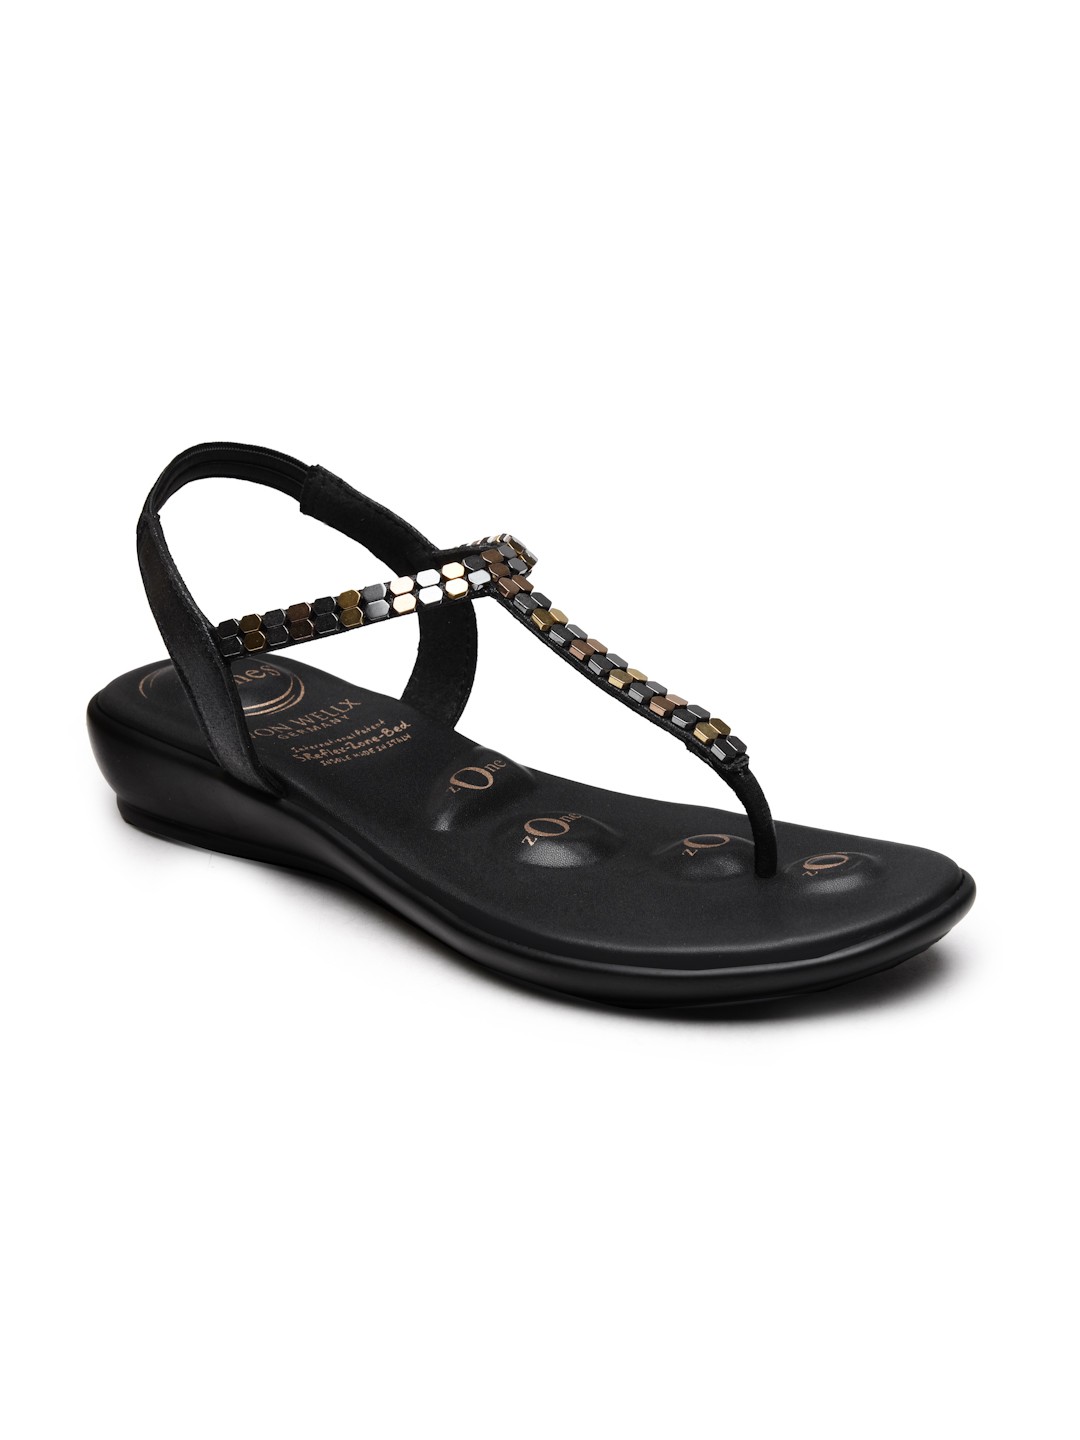 Buy Von Wellx Germany Comfort Women's Black Casual Sandals Regina Online in Bhopal